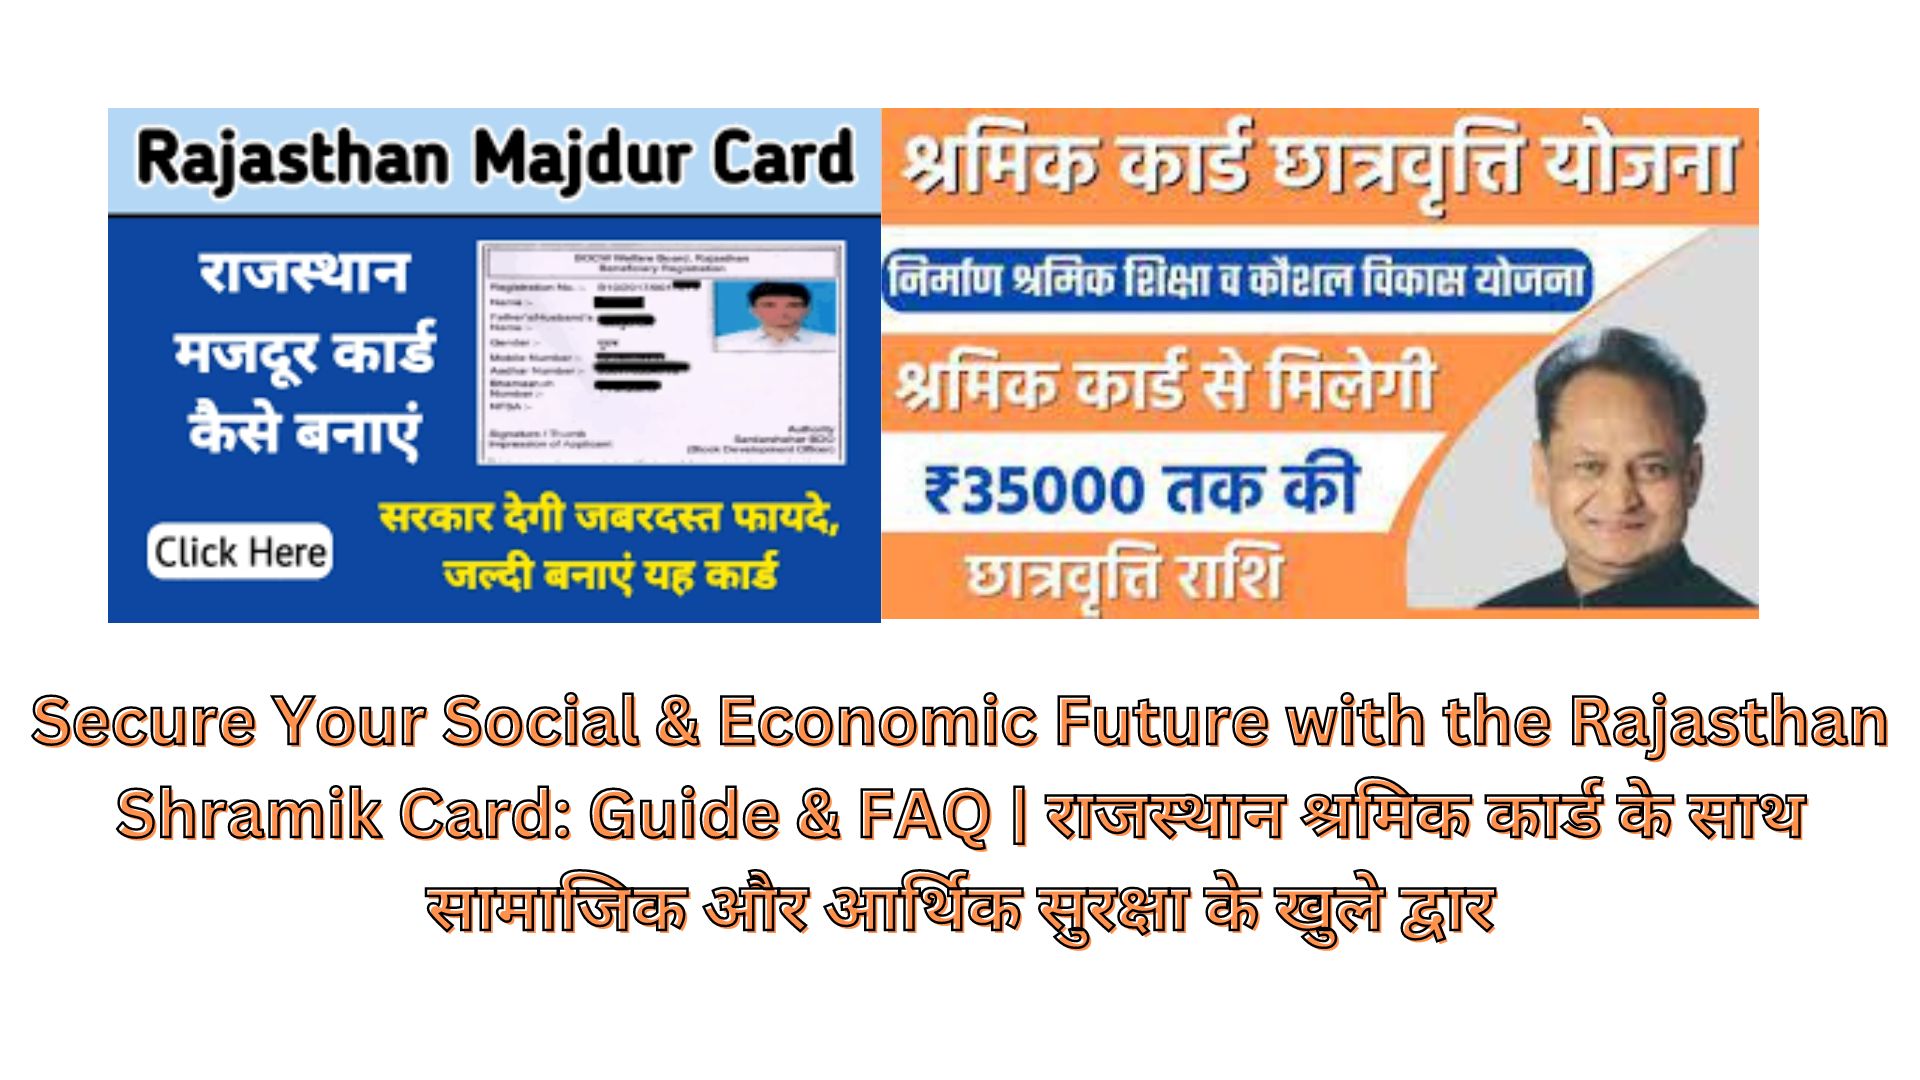 Secure Your Social & Economic Future with the Rajasthan Shramik Card: Guide & FAQ | राजस्थान श्रमिक कार्ड के साथ सामाजिक और आर्थिक सुरक्षा के खुले द्वार